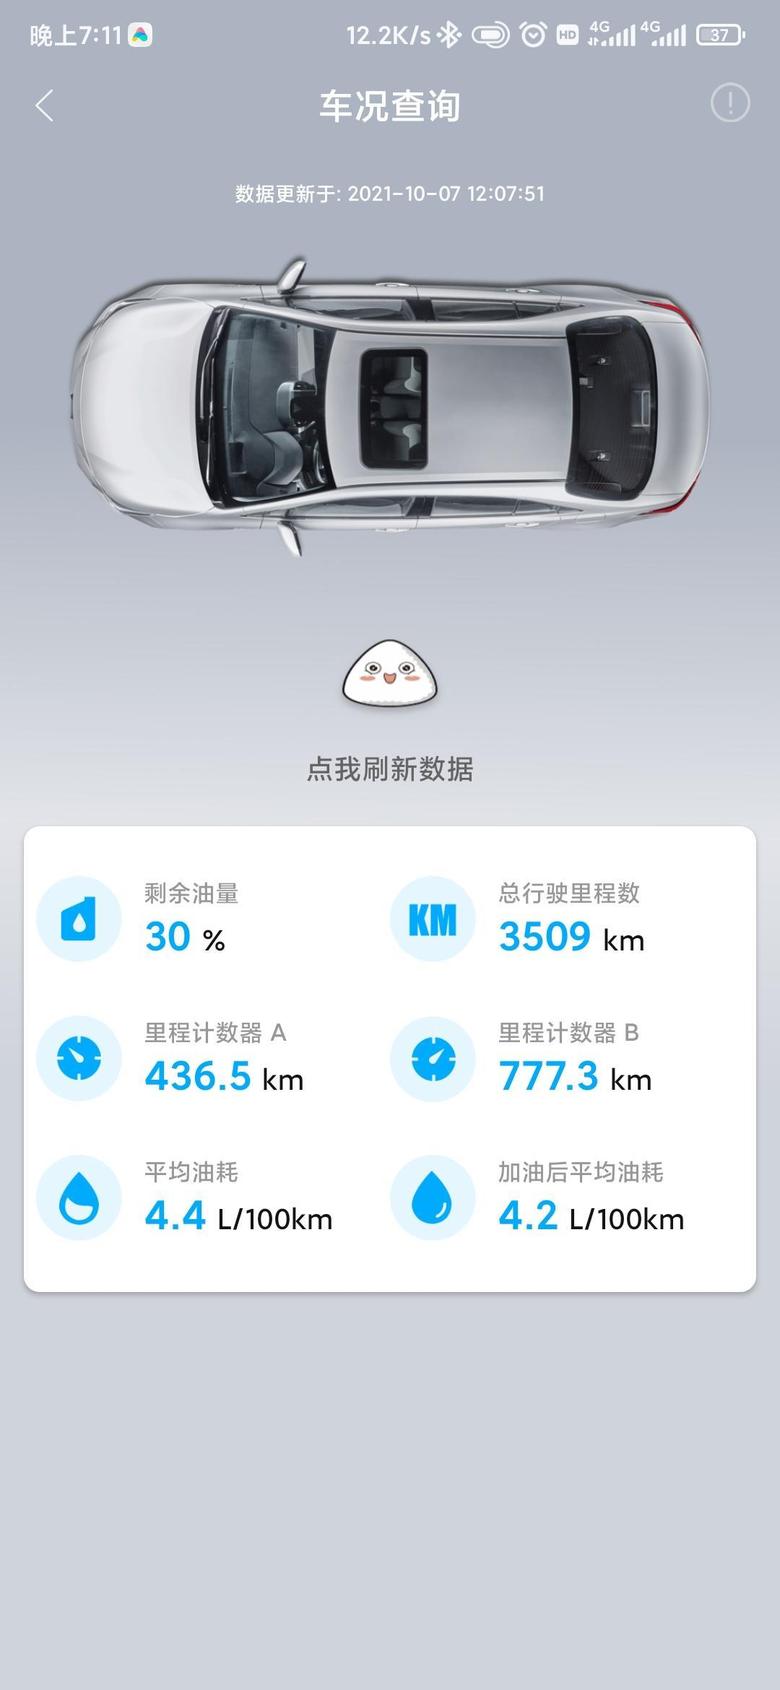 城市:广州 湖南邵阳去返，高速约1300公里，国道约200公里车型:21宽雷凌双擎领先版油耗:大概35升油跑了820公里，算起来4.3左右，基本全程开空调，表显油耗4.2